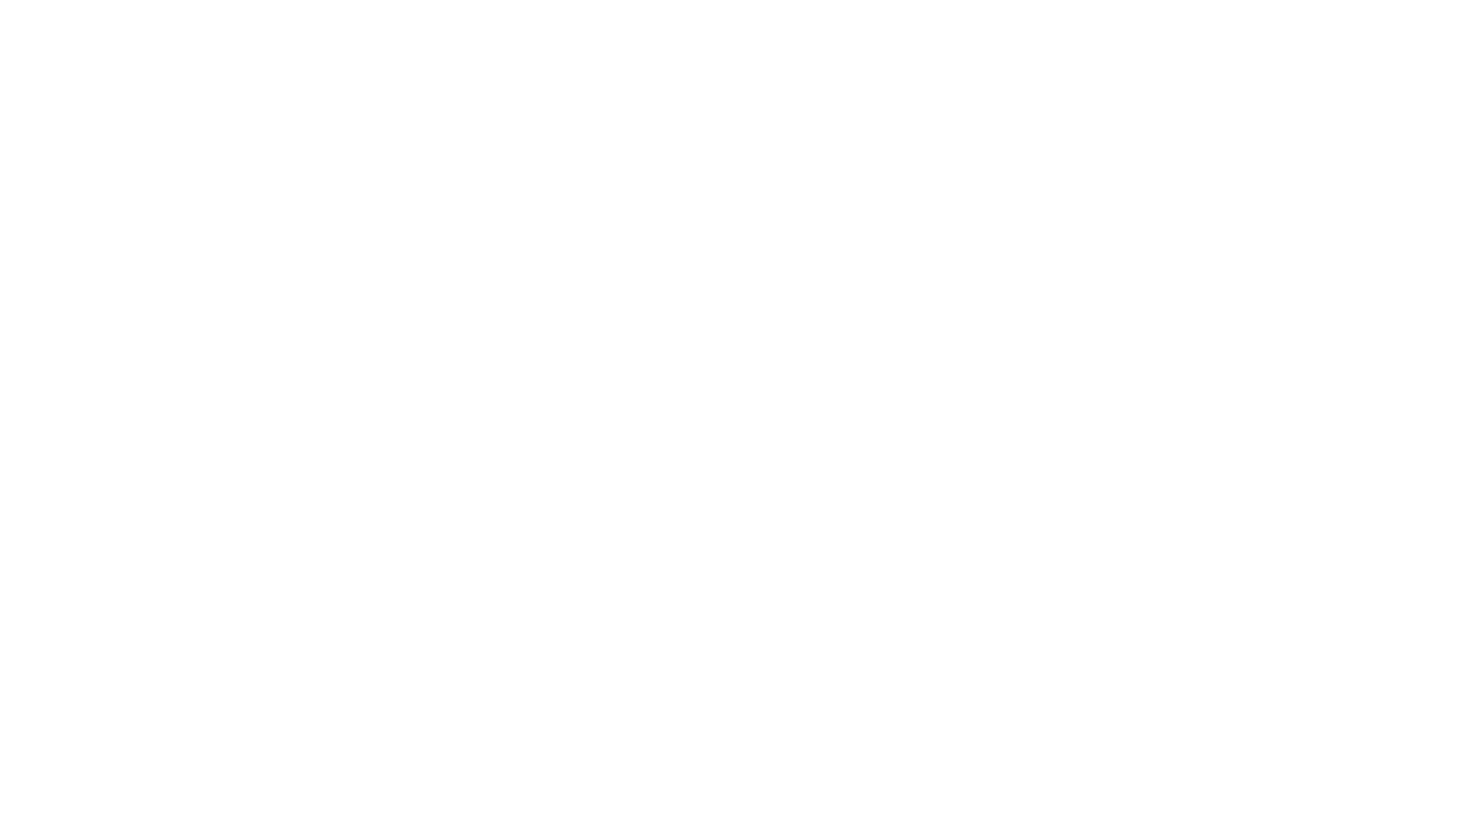 Hyatt Regency Sydney